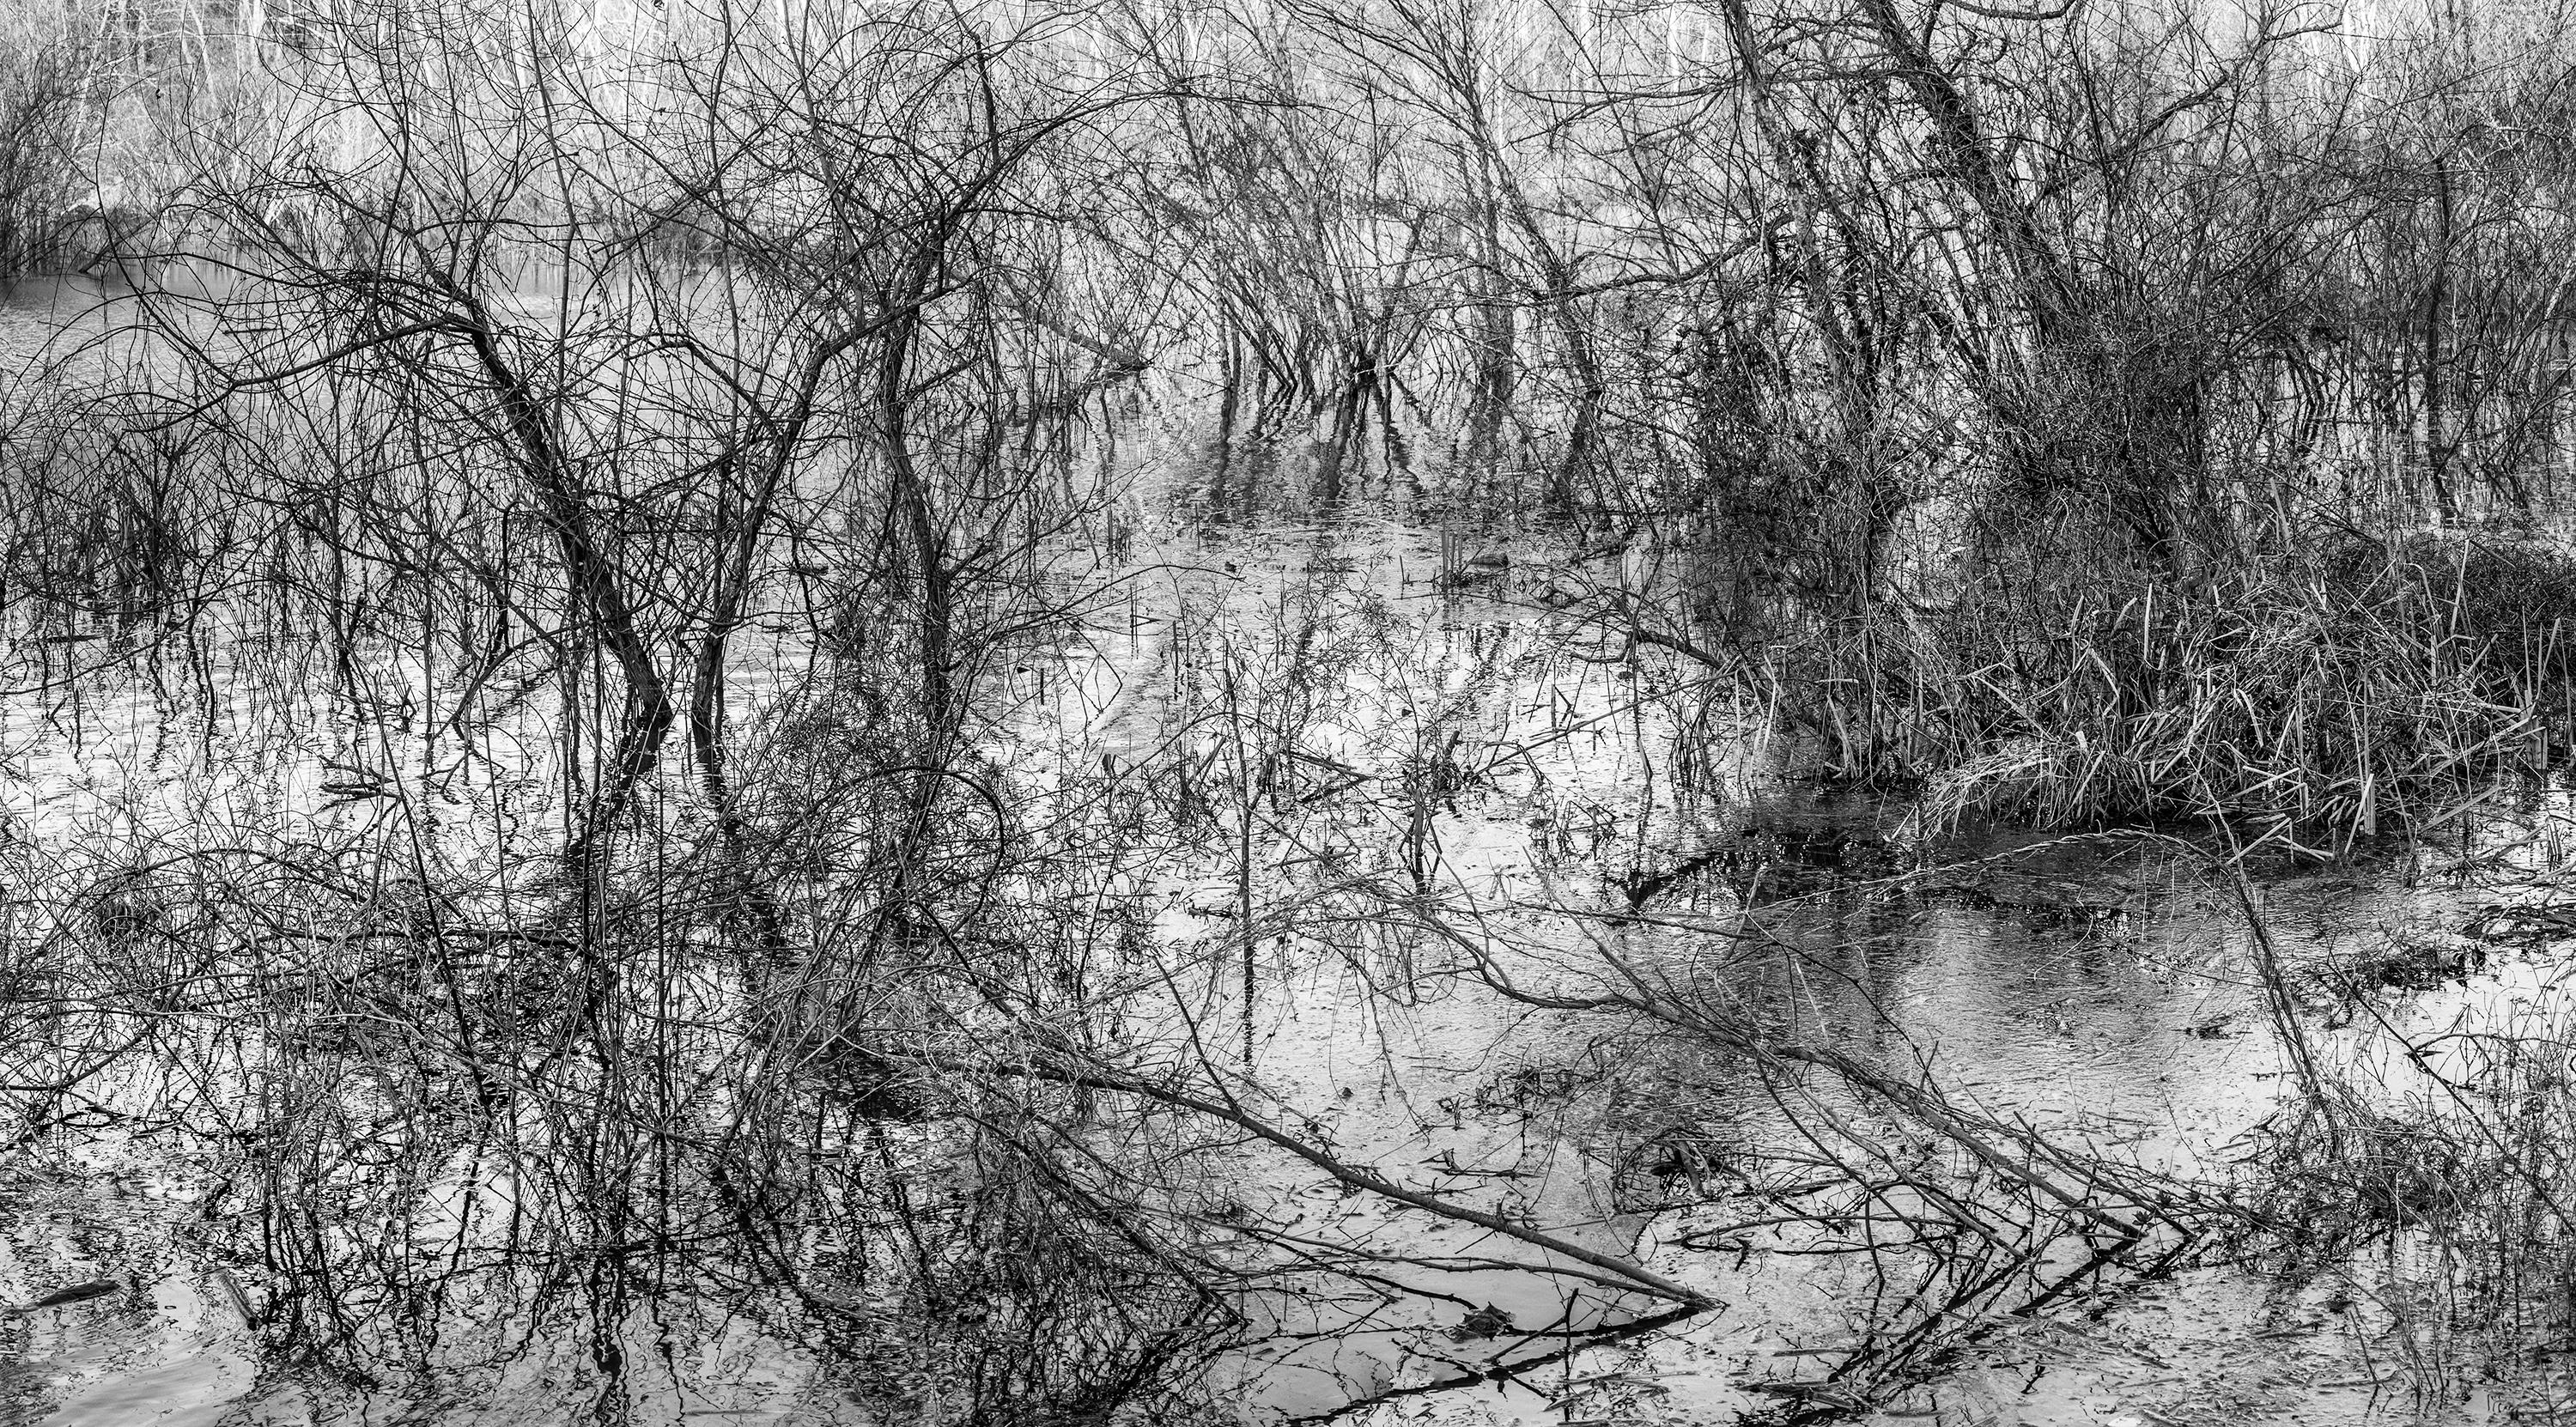 Landscape Photograph Richard Skoonberg - « River Etching » - Noir et blanc - Photographie de paysage - Eliot Porter